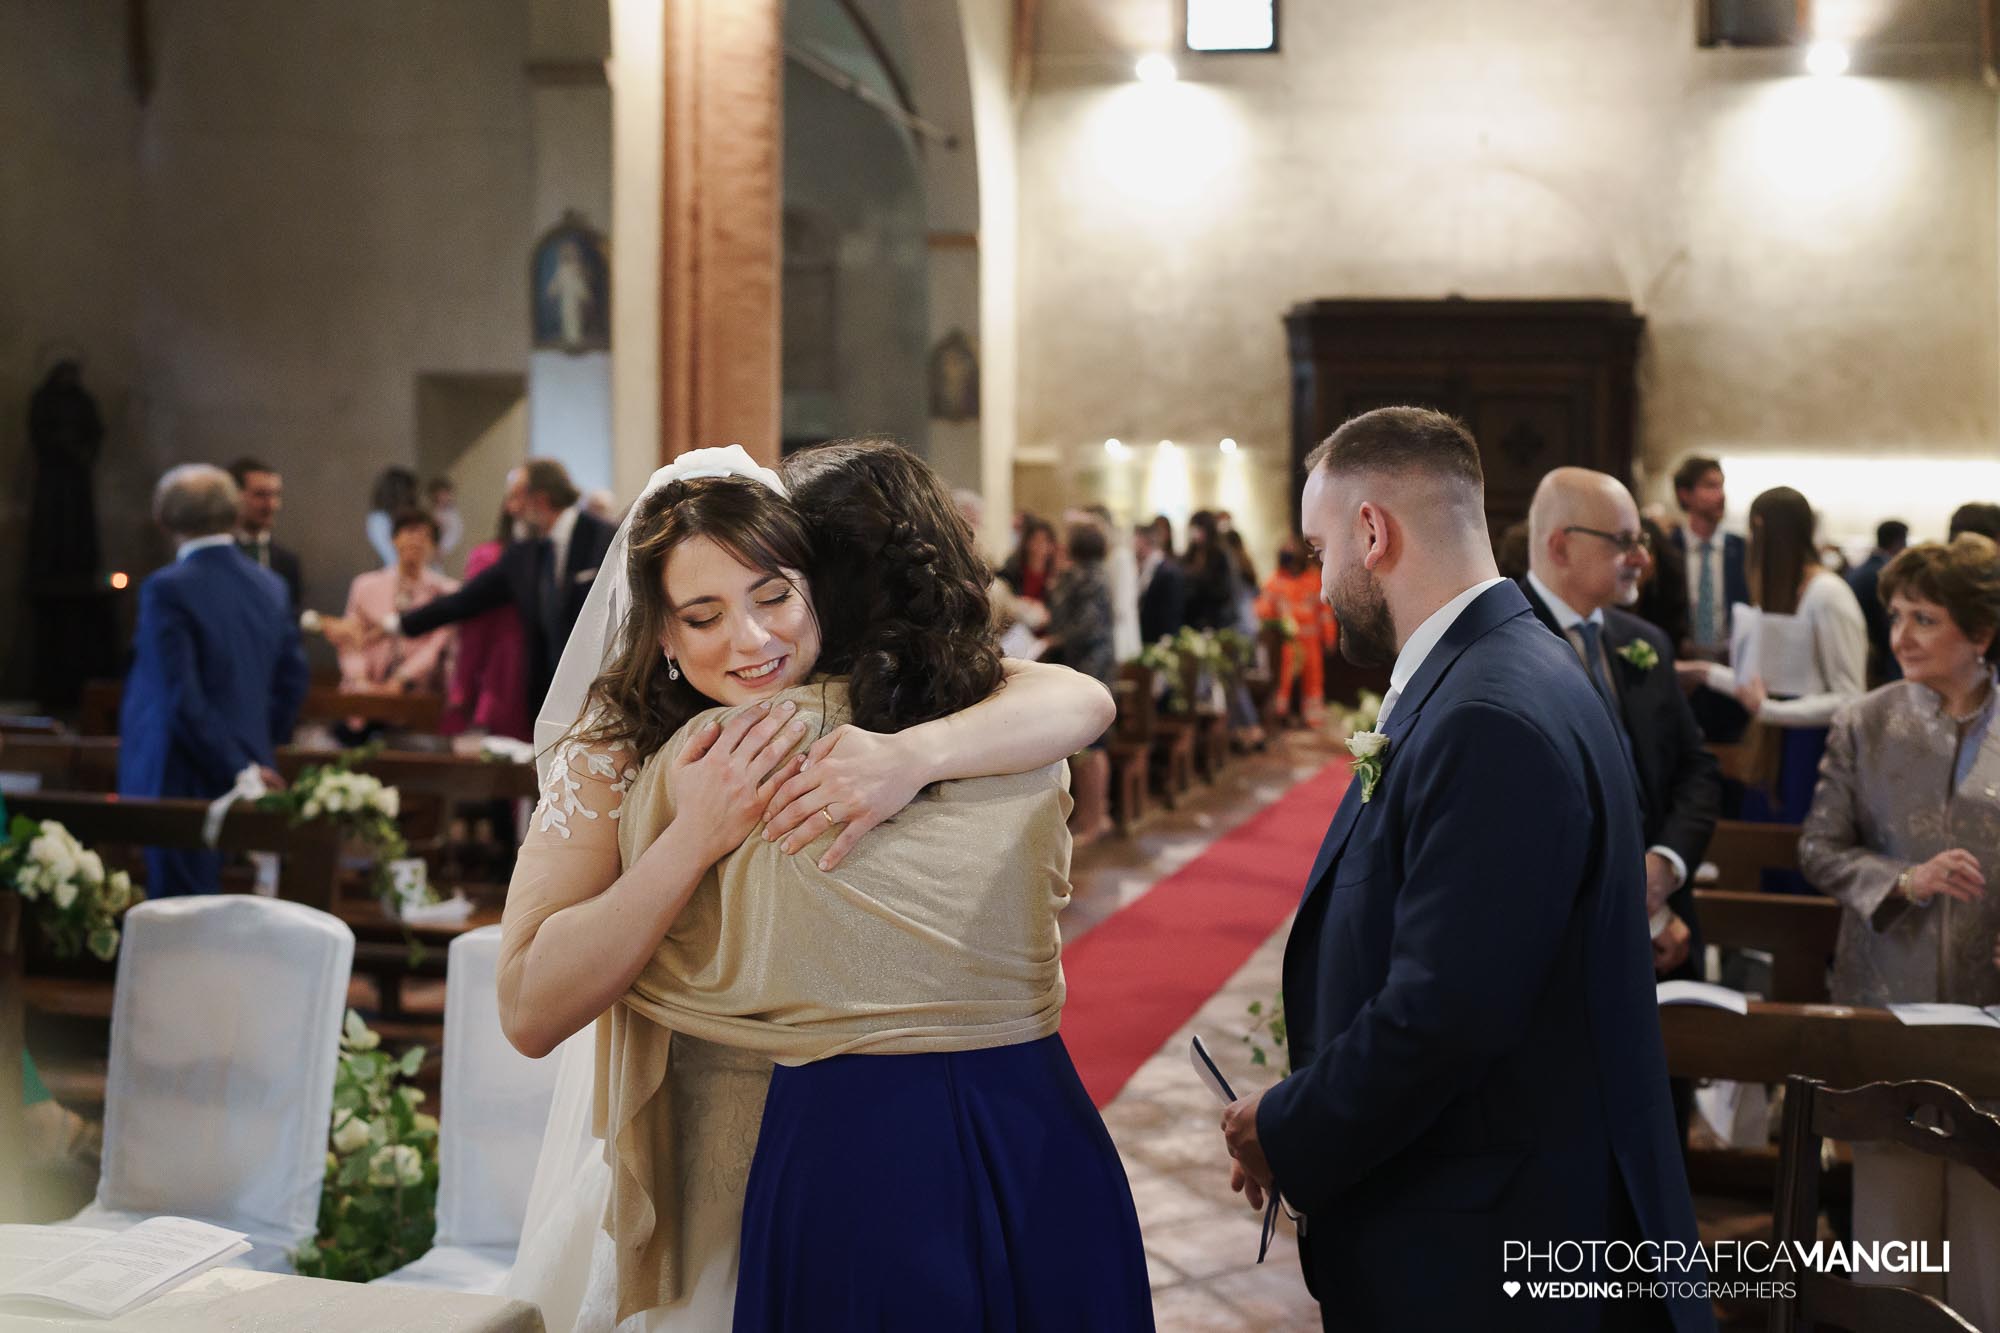 033 foto nozze wedding reportage sposi rito religioso abbraccio chiesa milano chiara oliviero